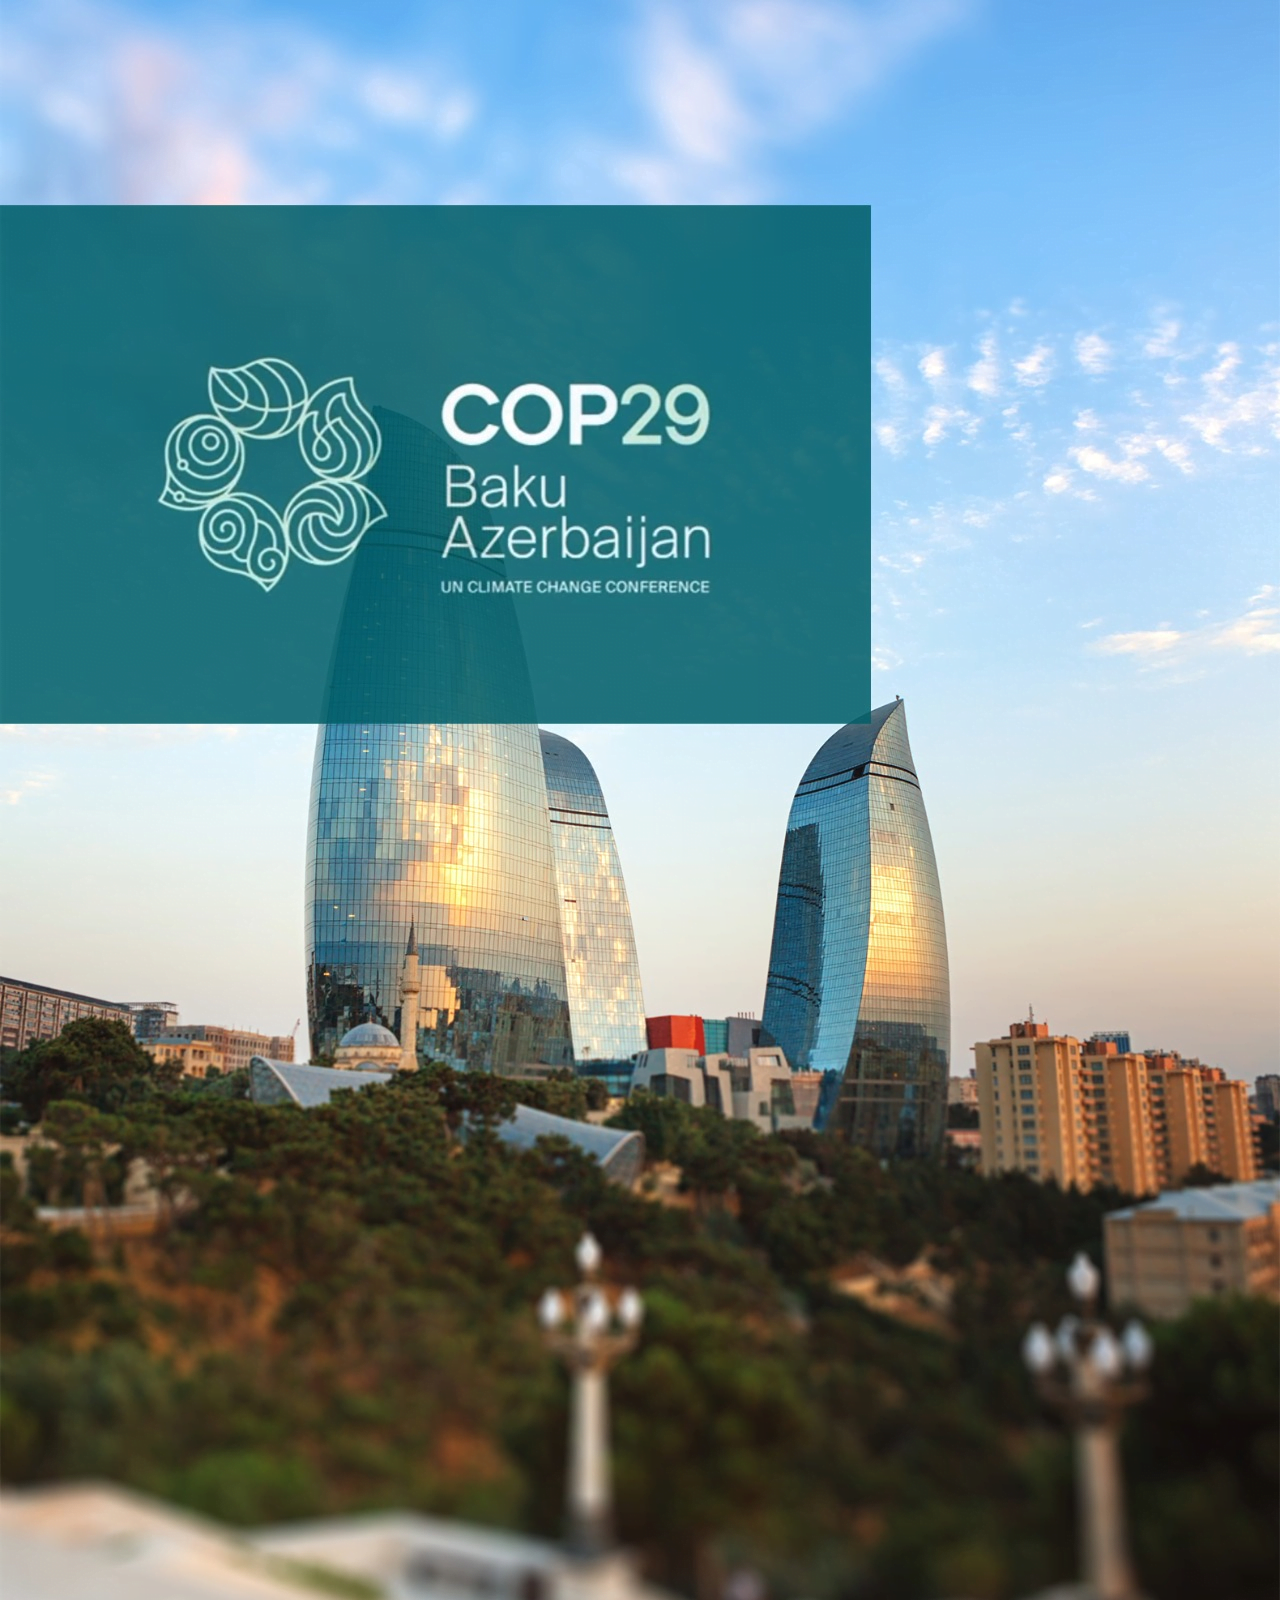 CONAFER GLOBAL: participação na COP29, no Azerbaijão, consolida entidade no tema ambiental